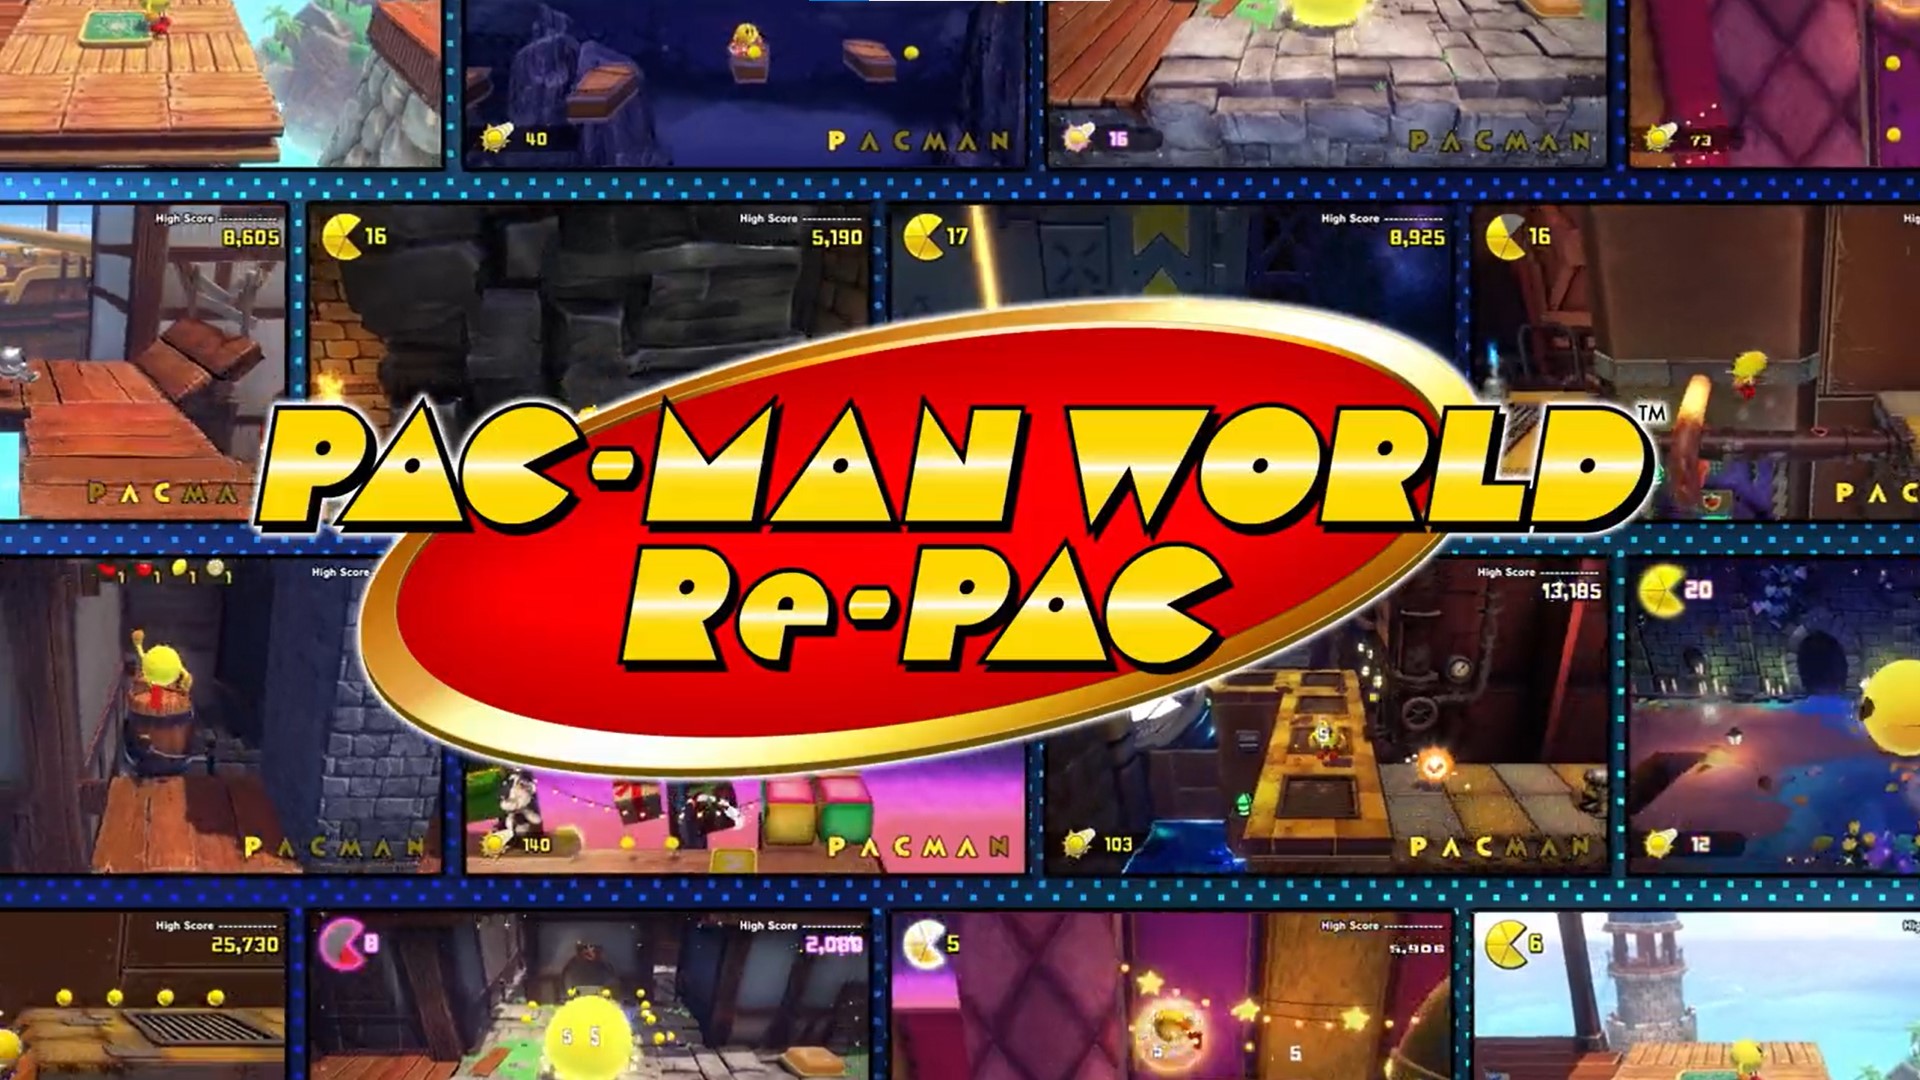 PAC-MAN WORLD Re-PAC para Nintendo Switch - Site Oficial da Nintendo